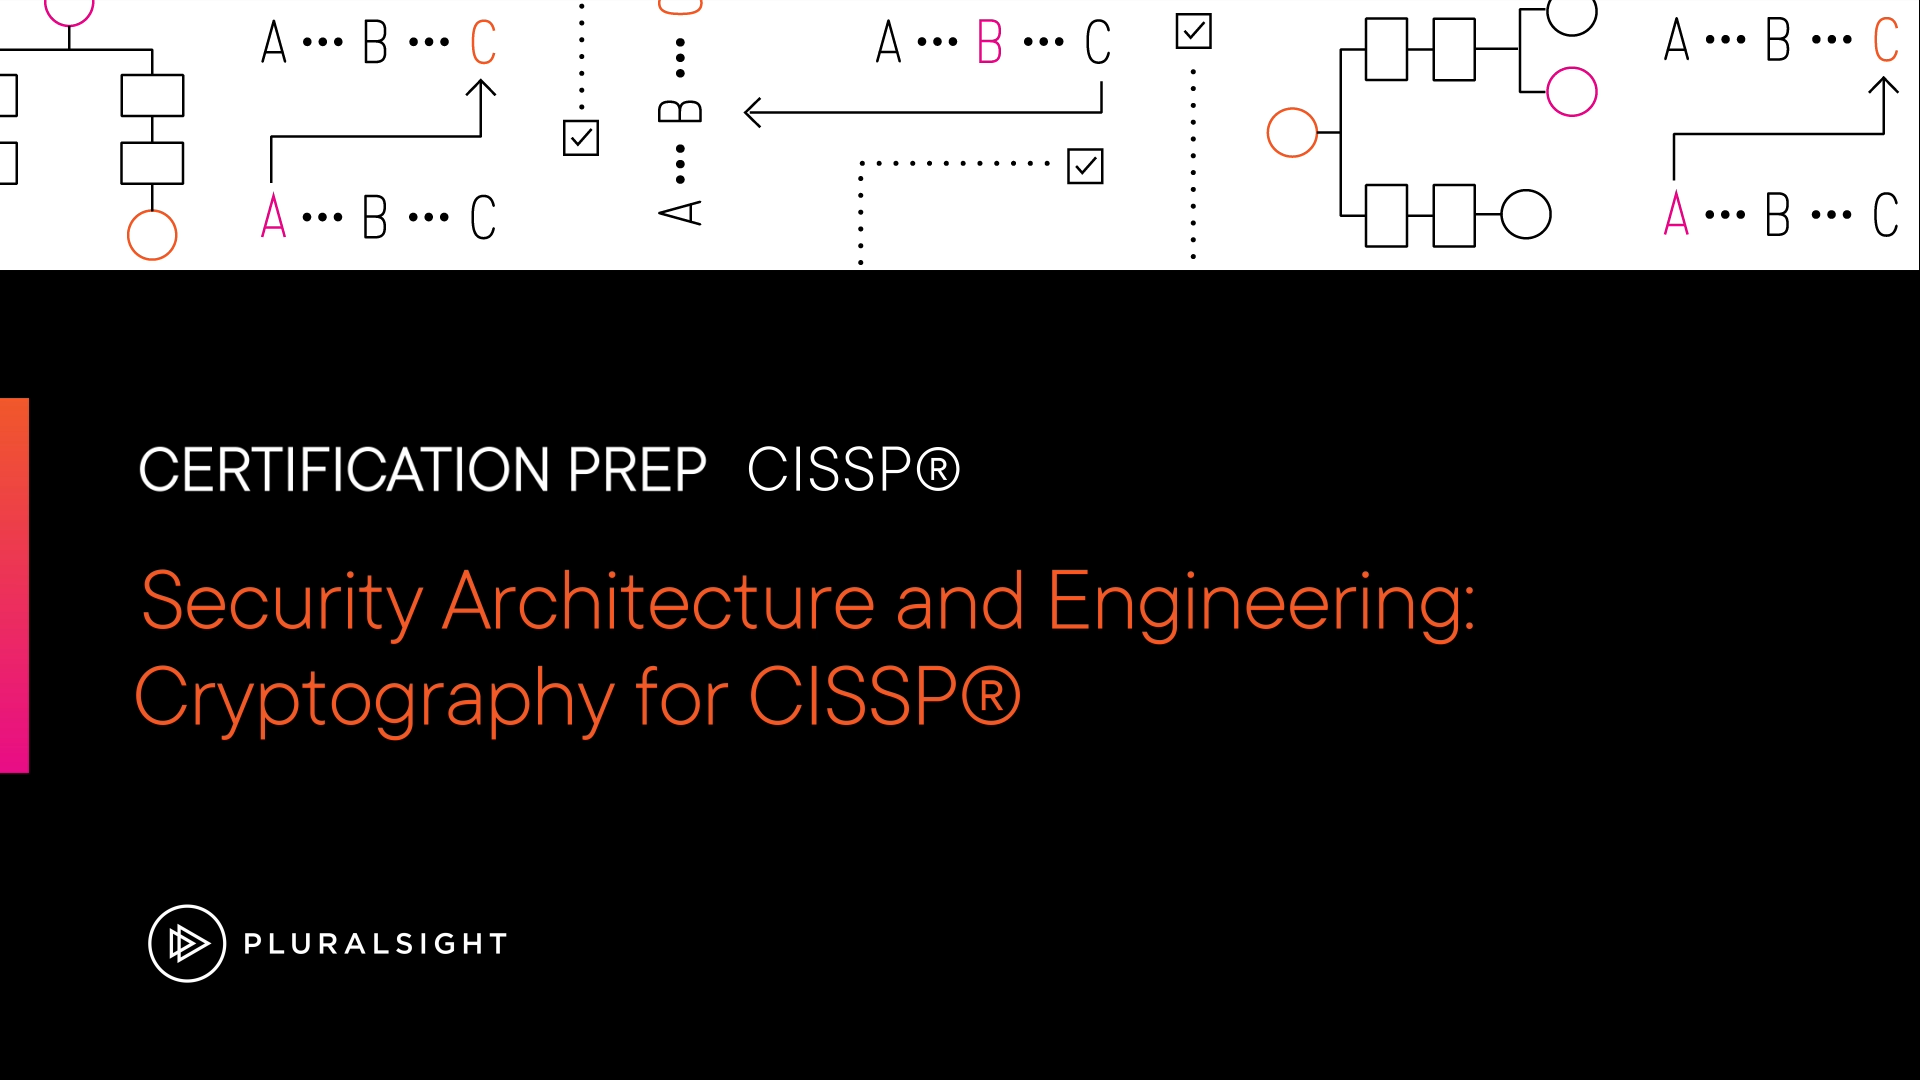 آموزش معماری و مهندسی امنیت: رمزنگاری برای CISSP®